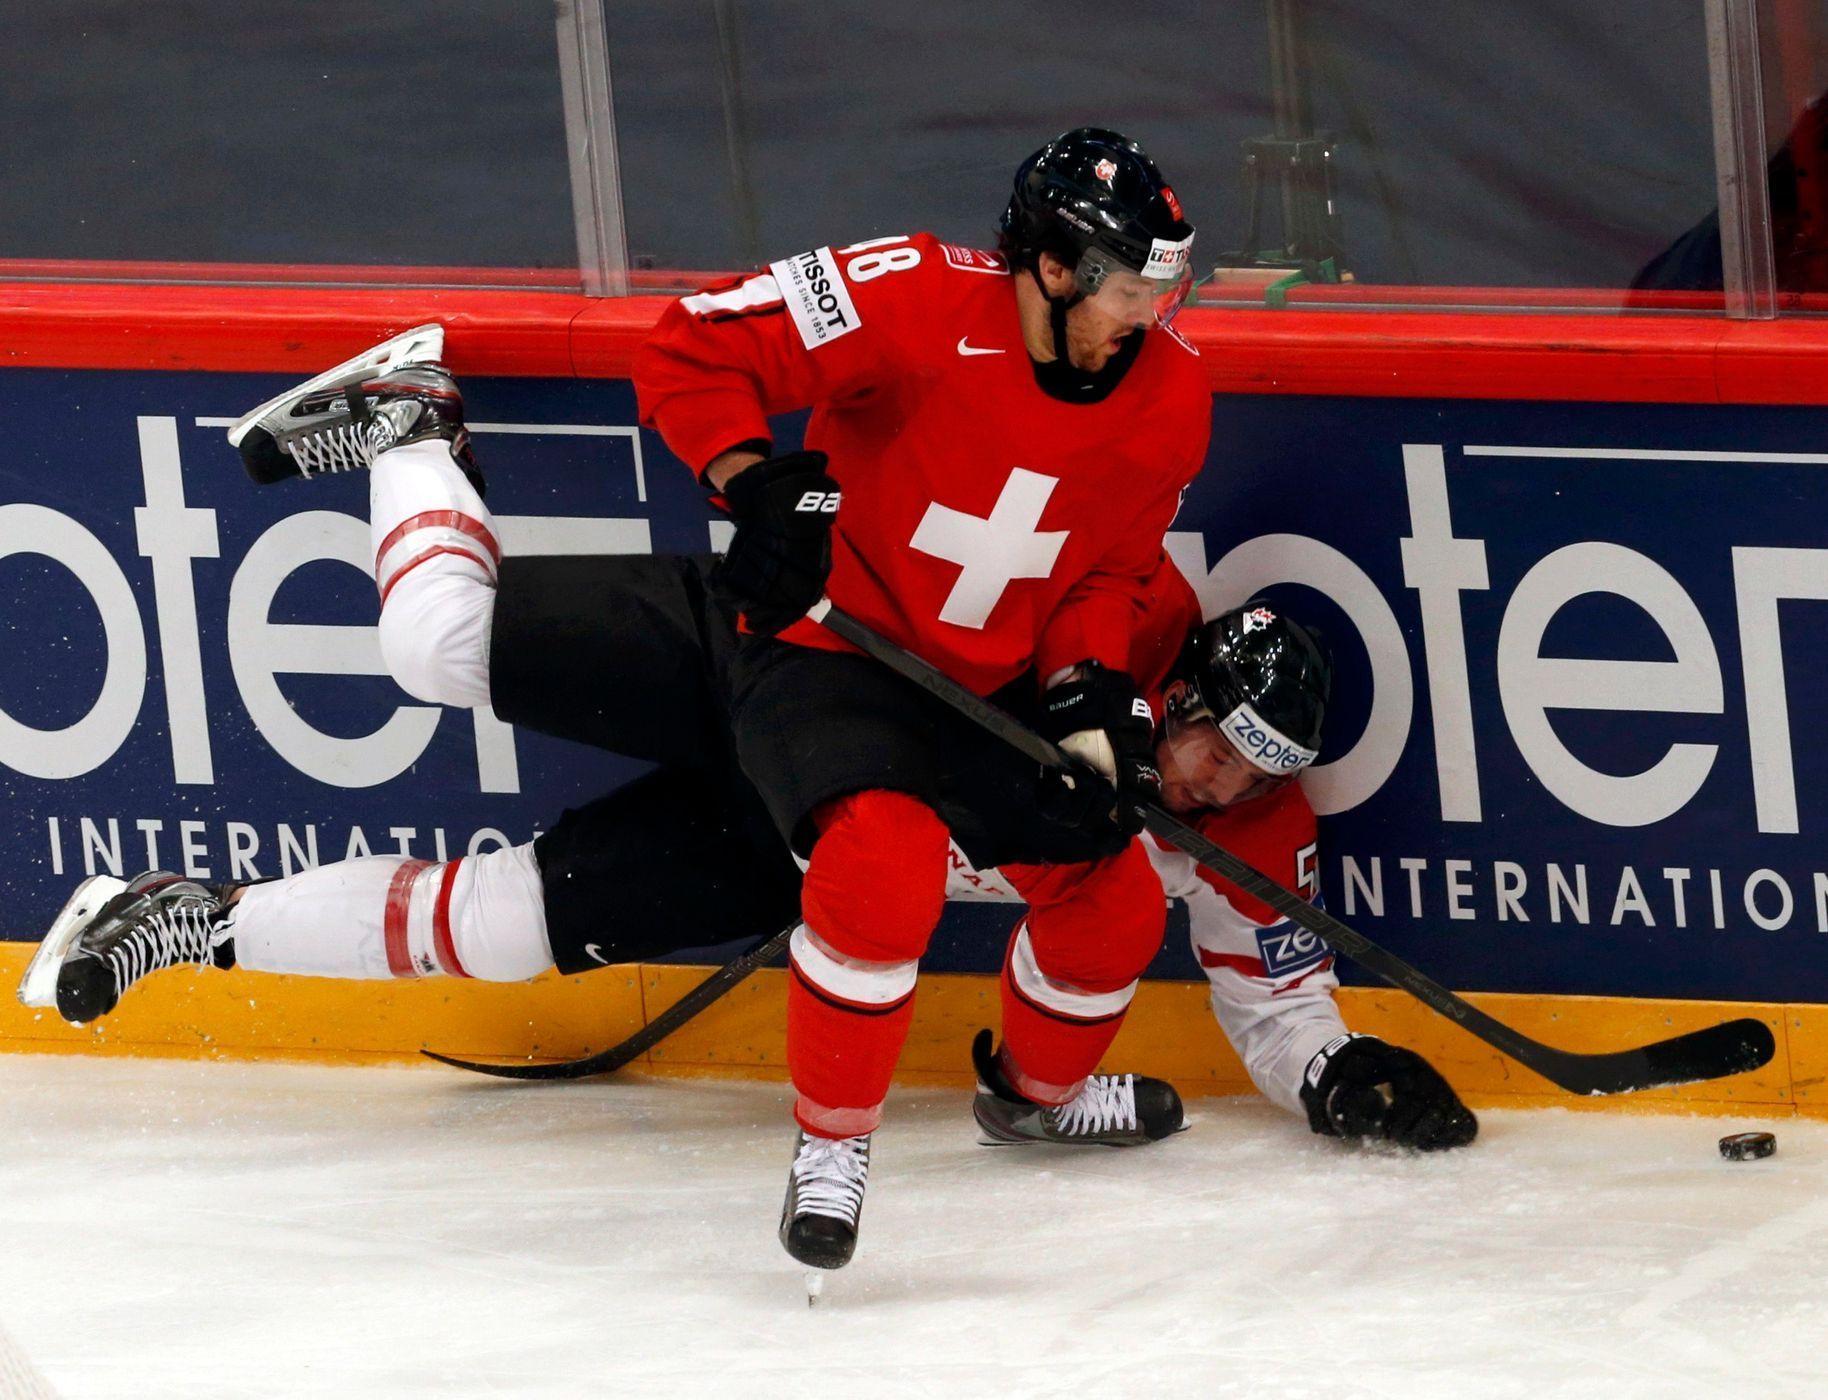 MS v hokeji 2013, Kanada - Švýcarsko: Brenden Dillon - Matthias Bieber